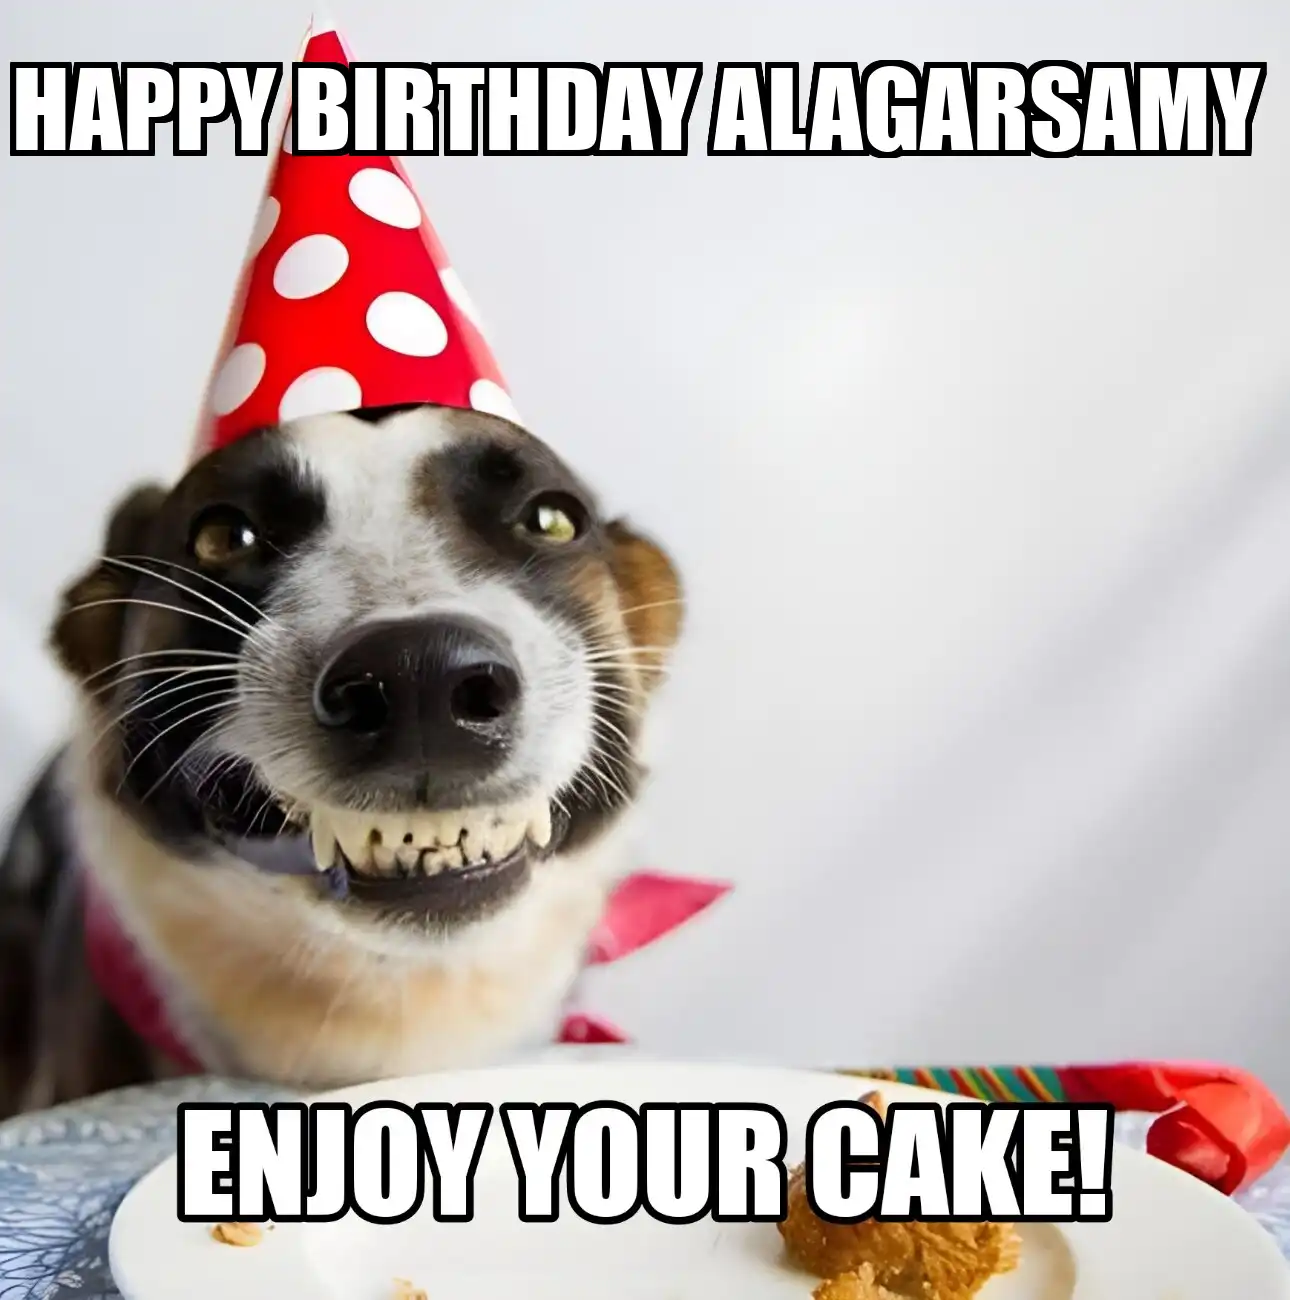 Happy Birthday Alagarsamy Enjoy Your Cake Dog Meme